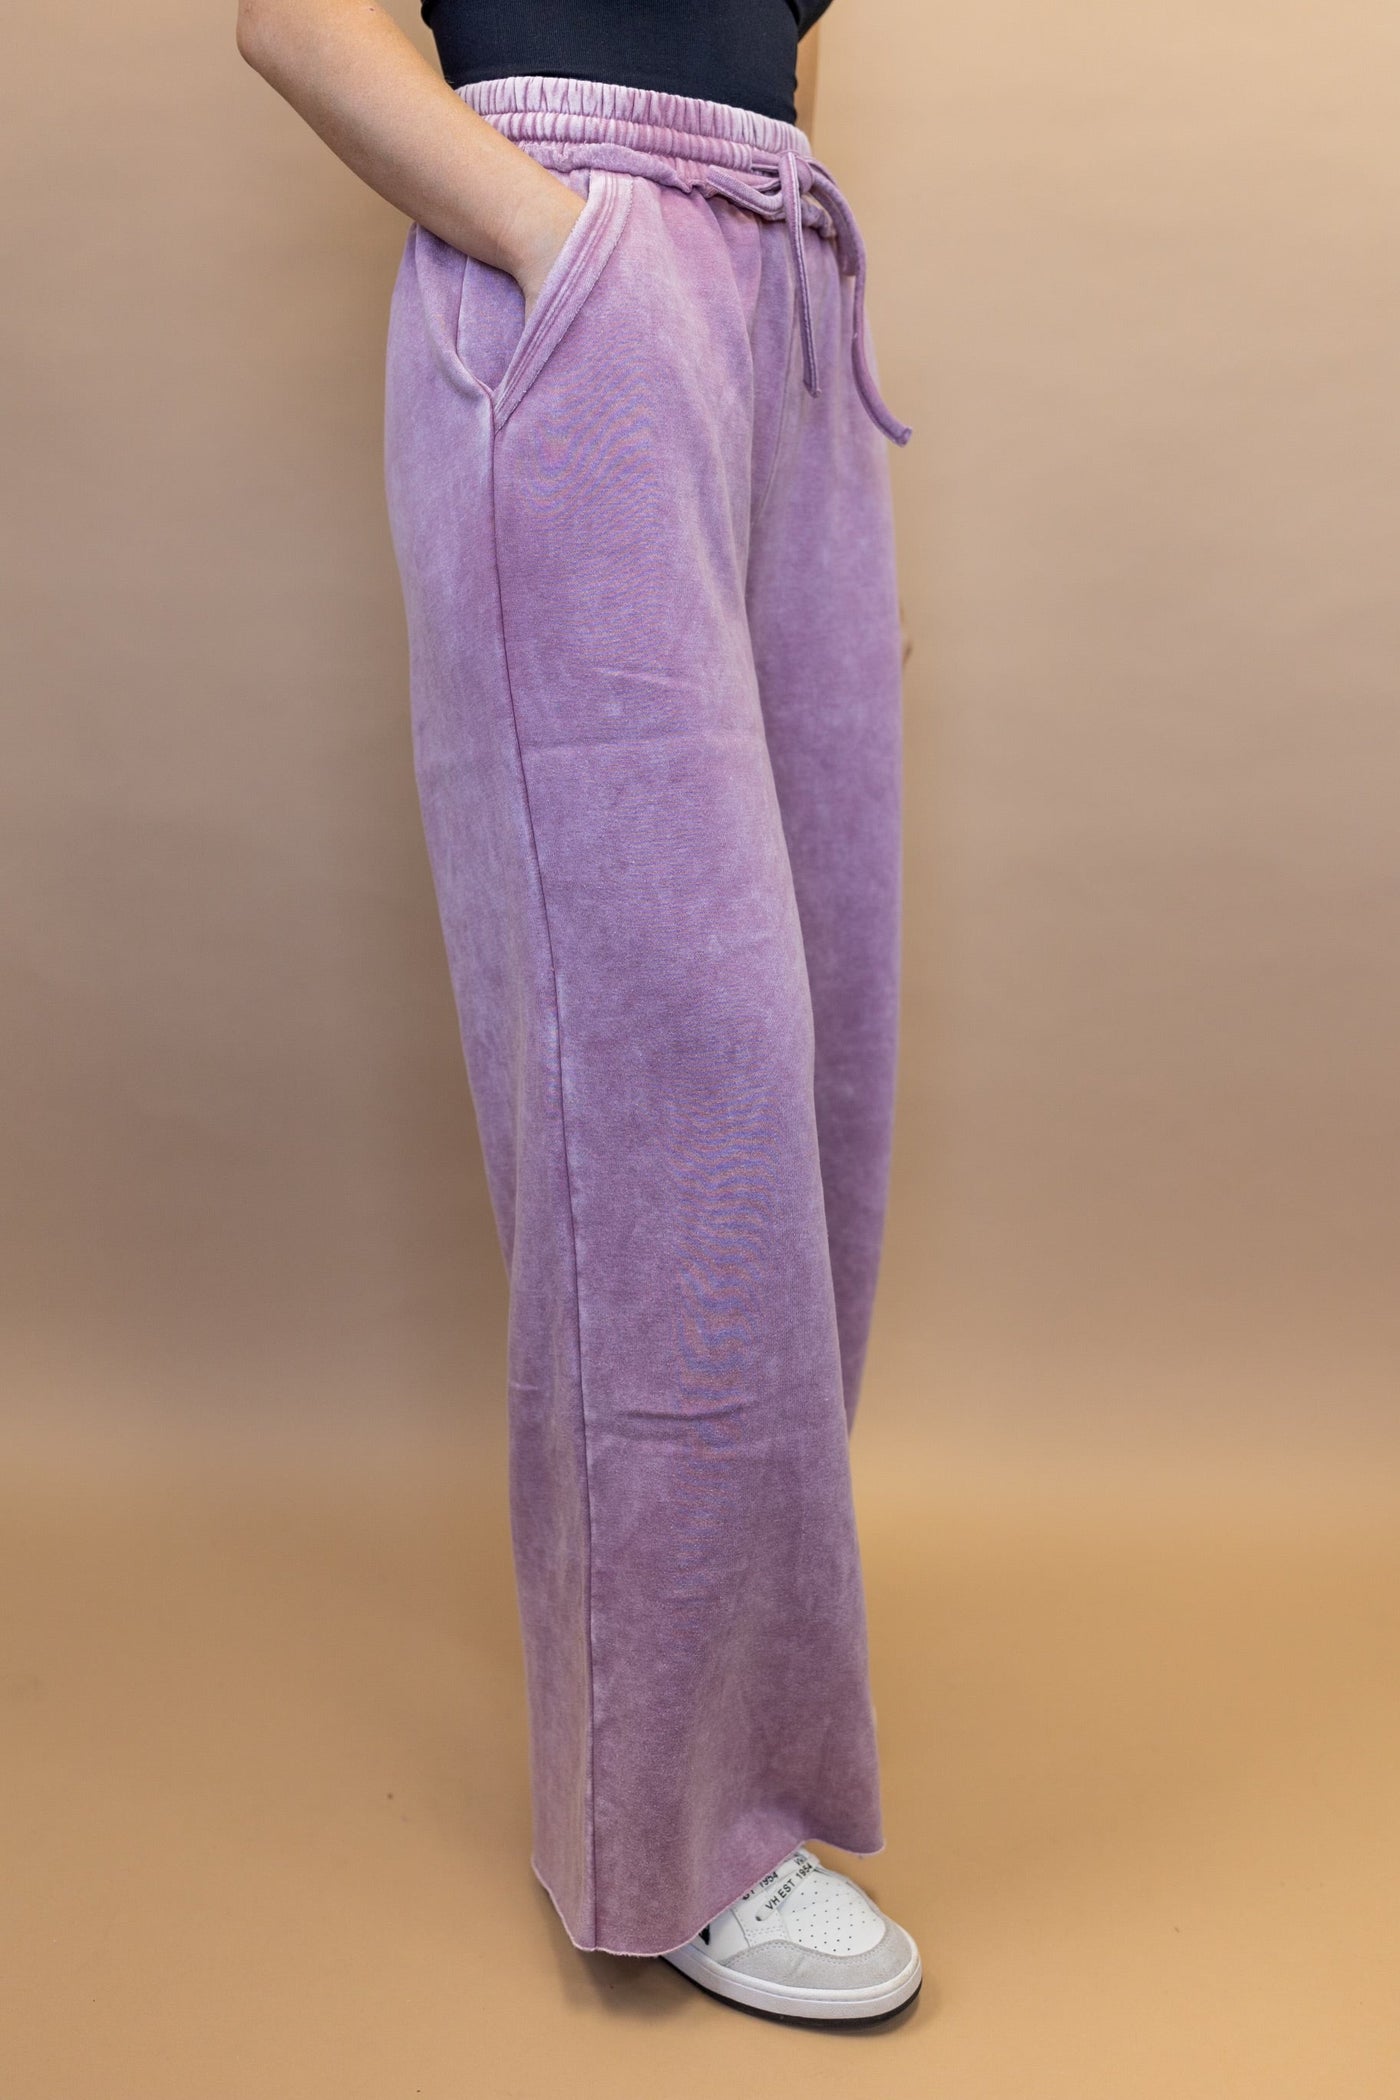 Nona Drawstring Pants in Lilac